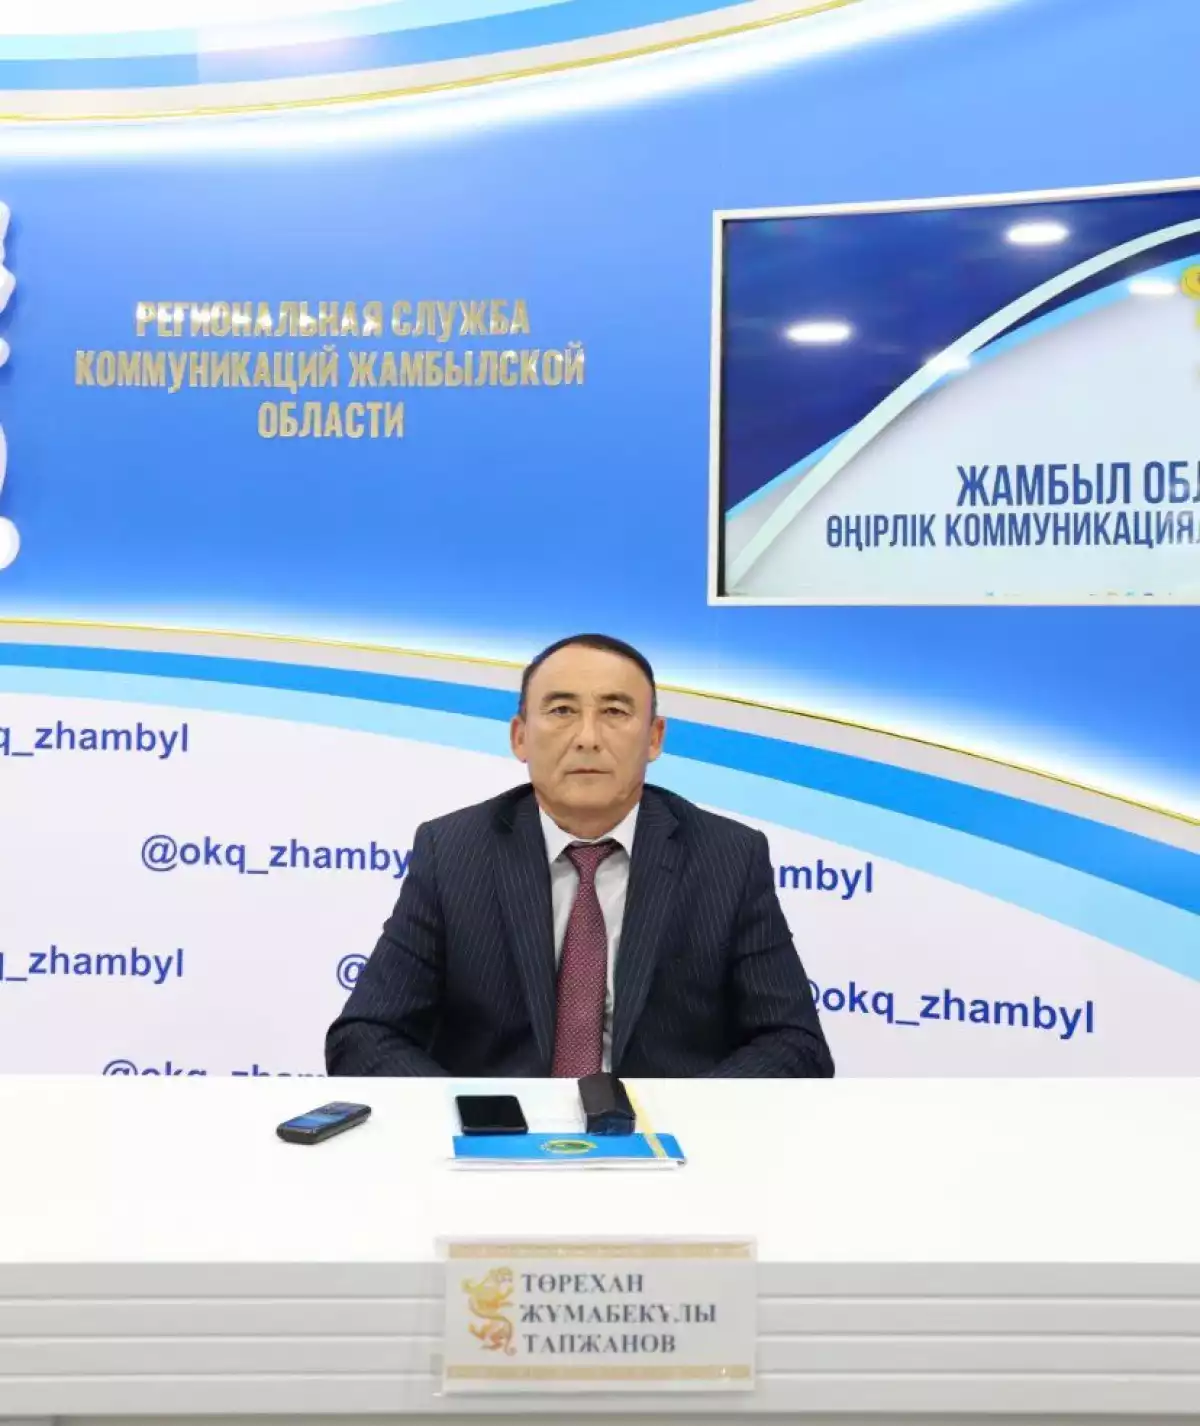 Показатели социально-экономического развития Кызылкайнарского сельского округа